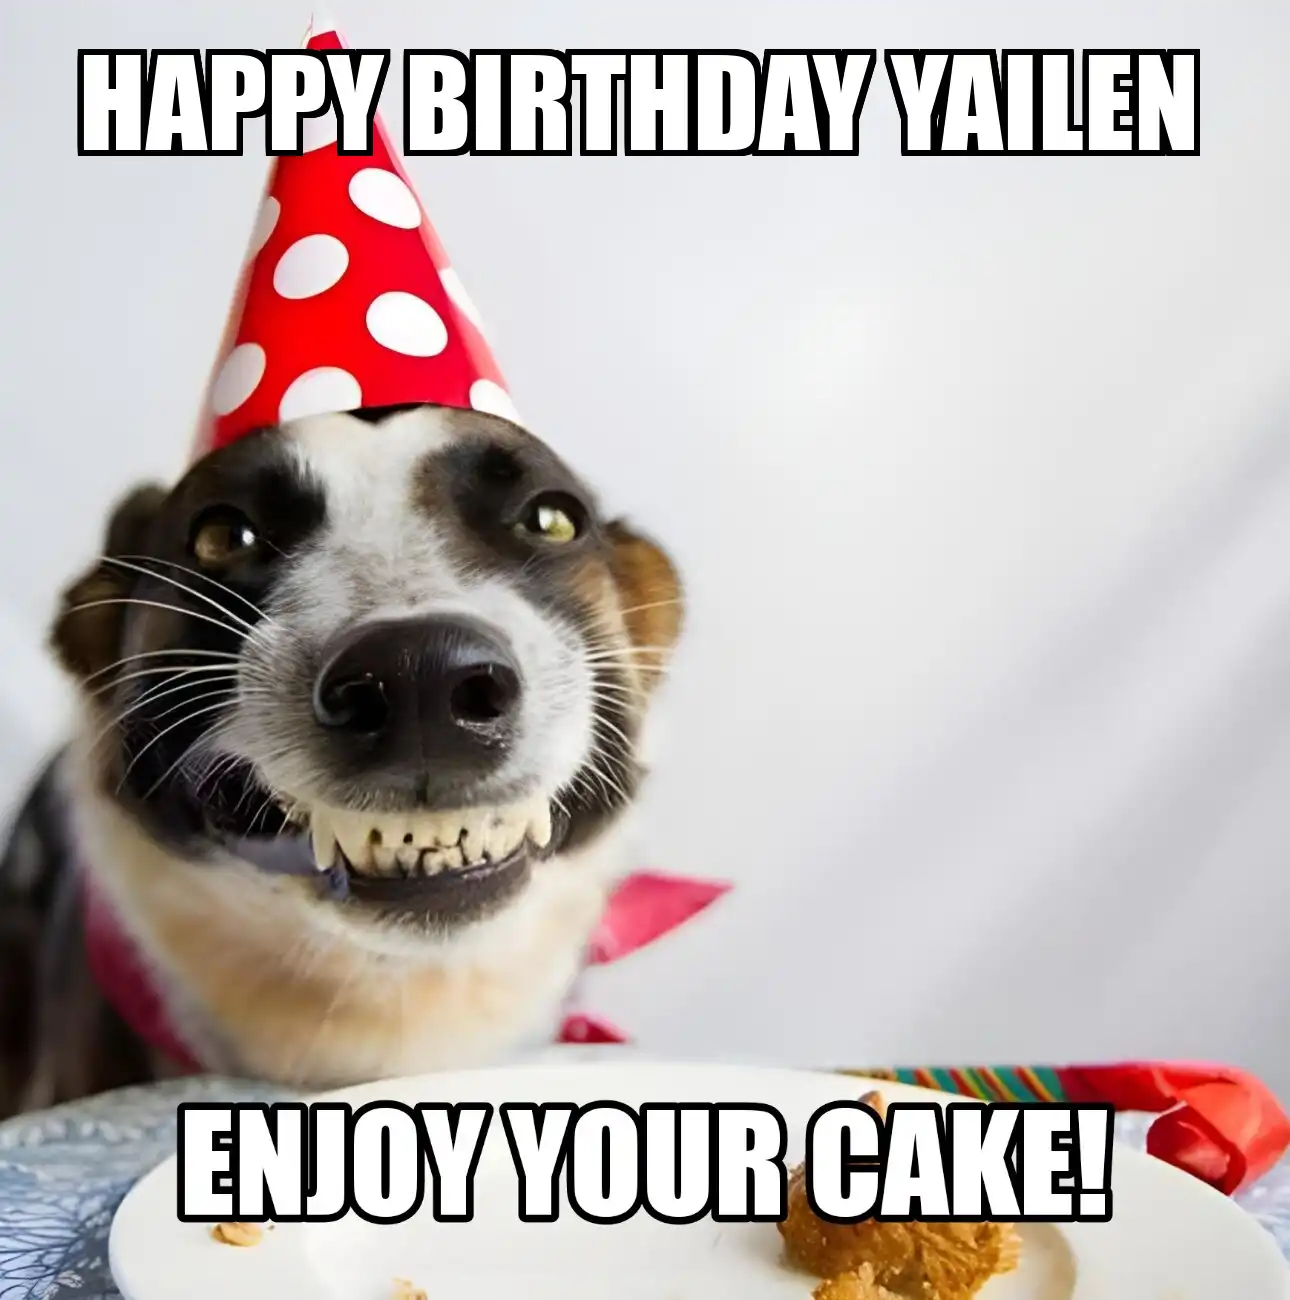 Happy Birthday Yailen Enjoy Your Cake Dog Meme